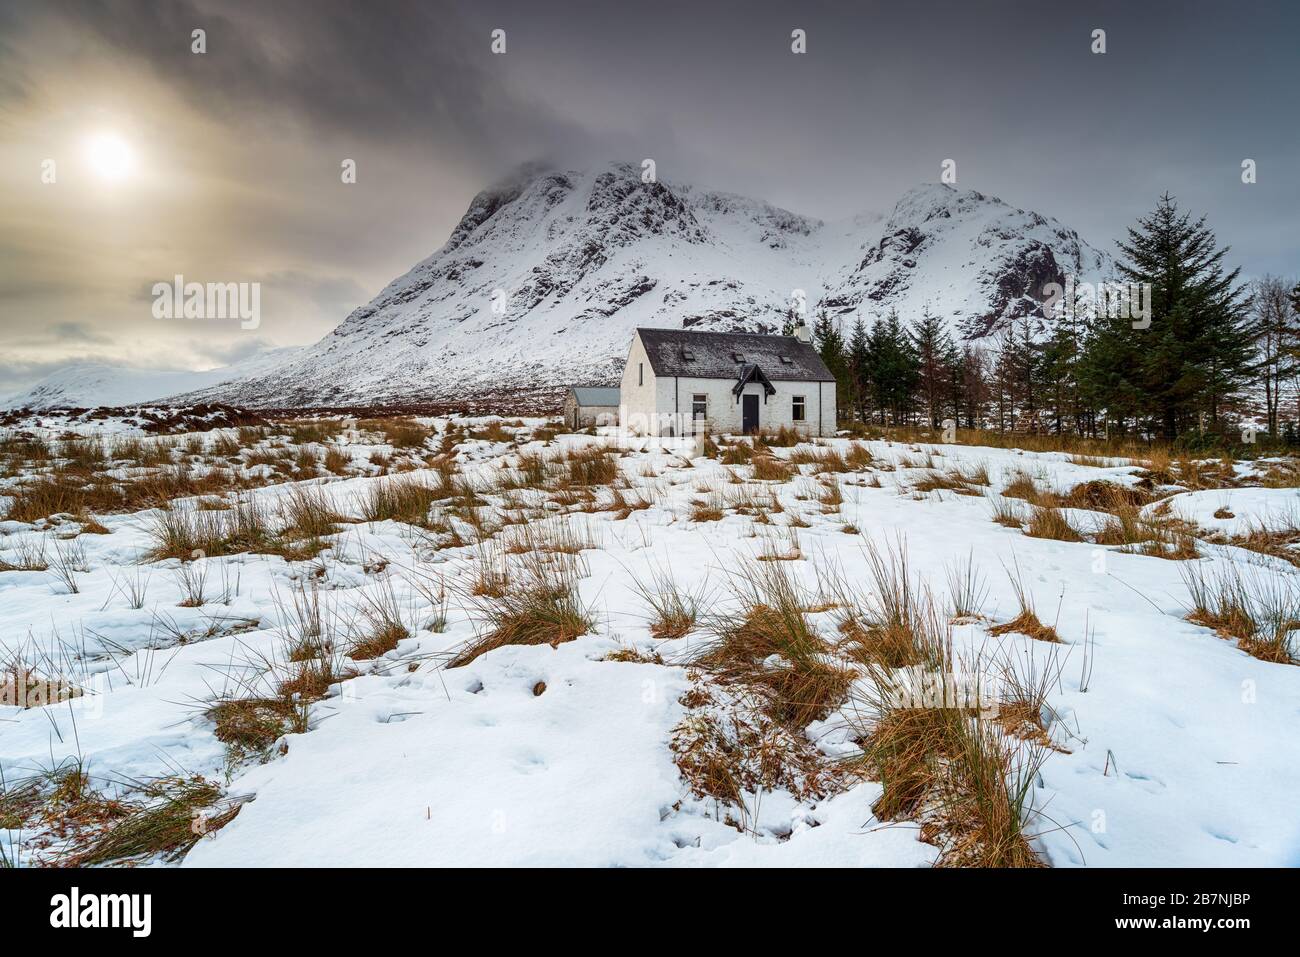 Un vieux chalet de montagne sous une couverture de neige à Glencoe dans les Highlands écossais Banque D'Images